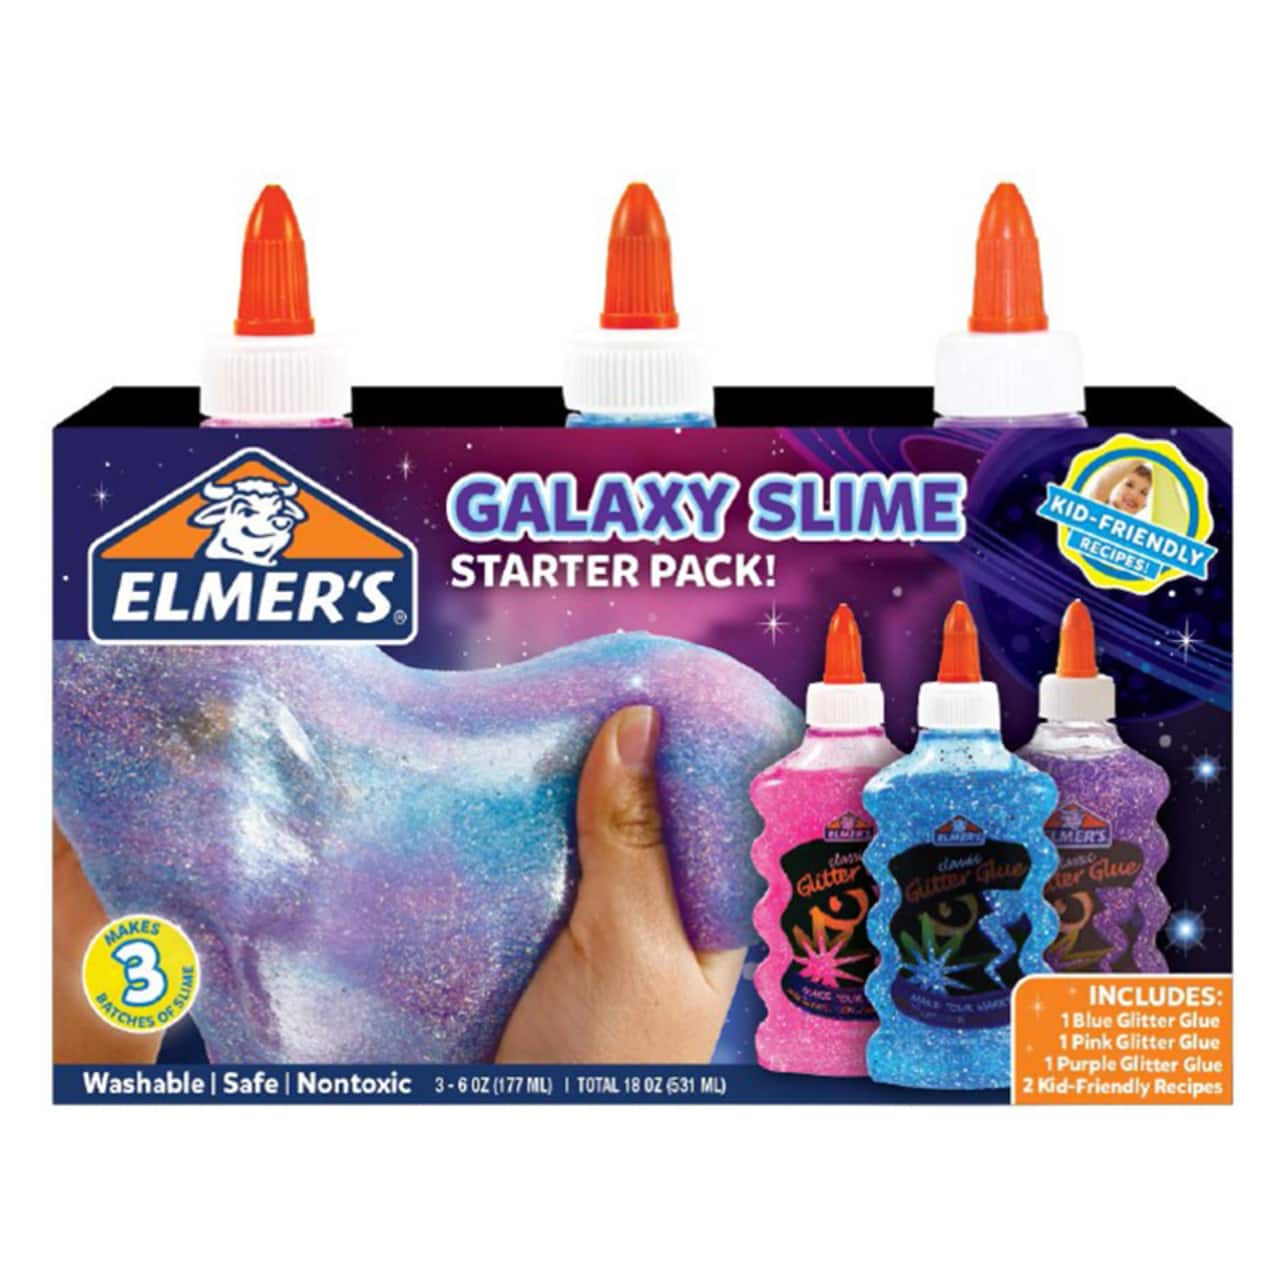 Elmer's Everyday Glitter Slime Starter Kit